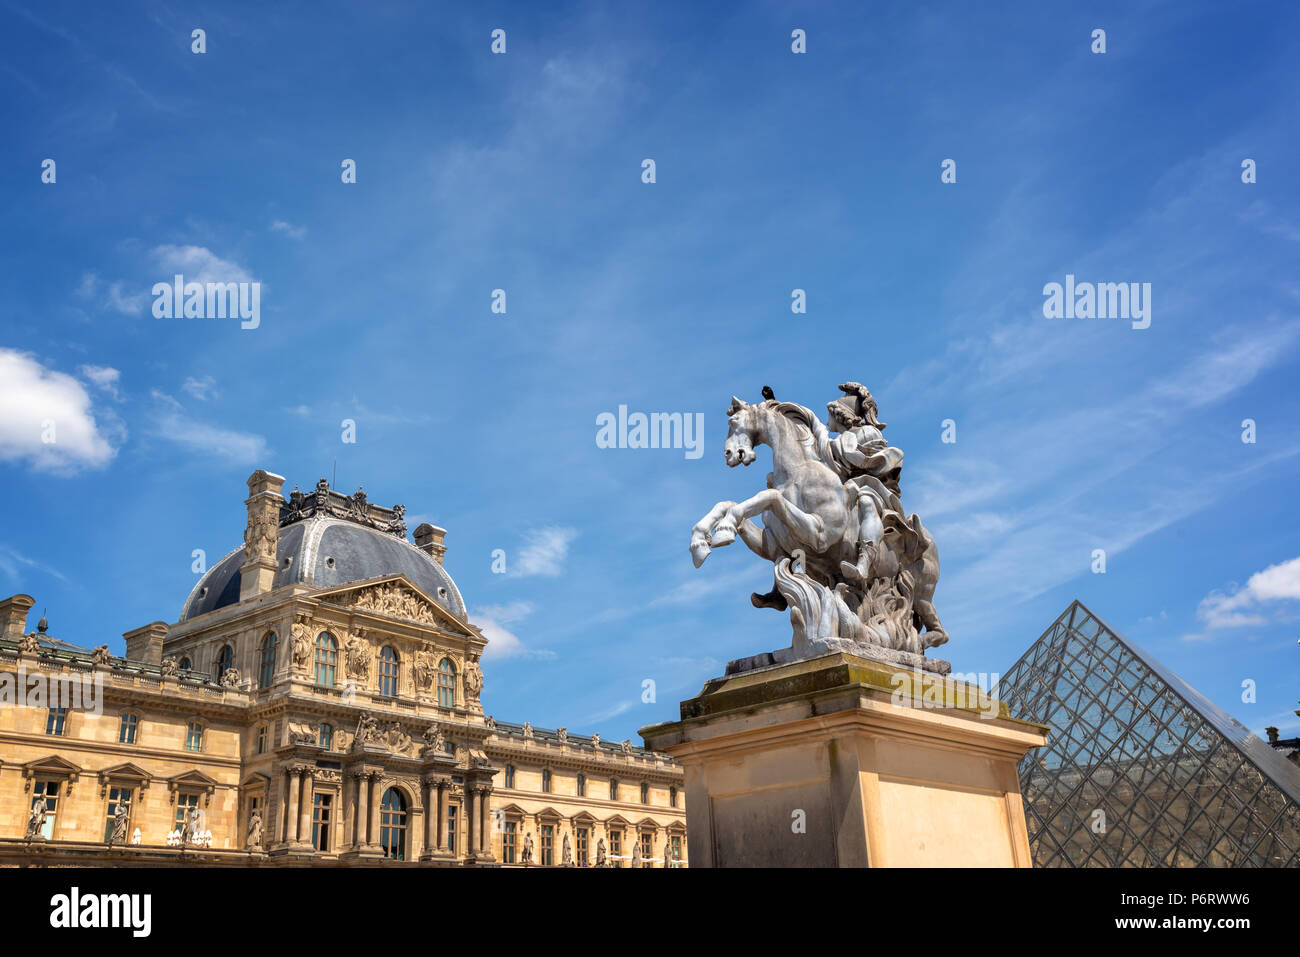 El patio principal del Palacio del Louvre, el palacio con una estatua ecuestre del rey Luis XIV Foto de stock